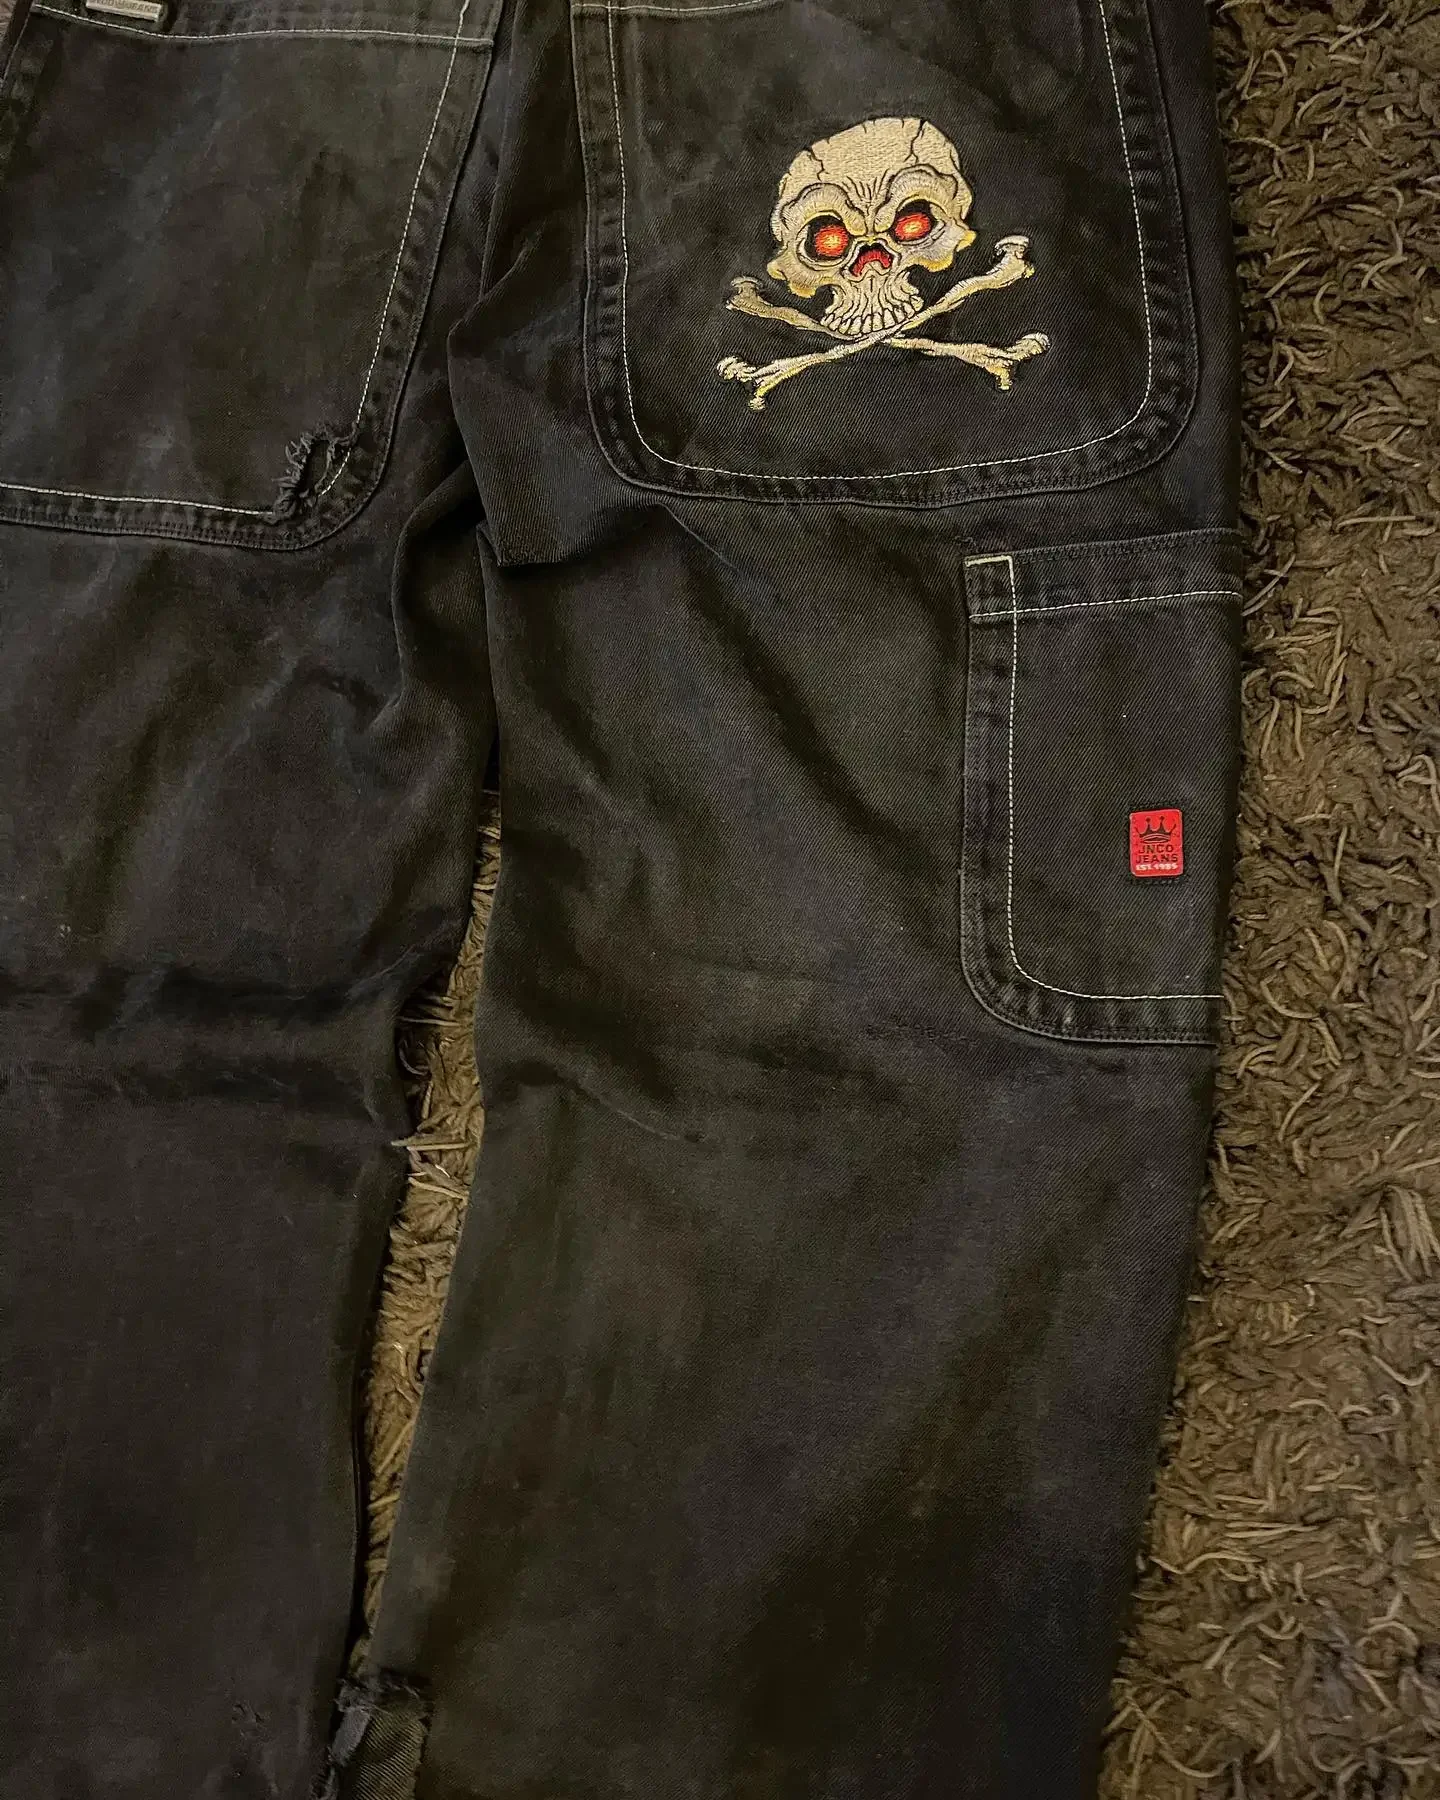 Джинсы JNCO мужские в стиле ретро, уличная одежда, мешковатые джинсы с графической вышивкой черепа в стиле хип-хоп, черные брюки в готическом стиле с завышенной талией